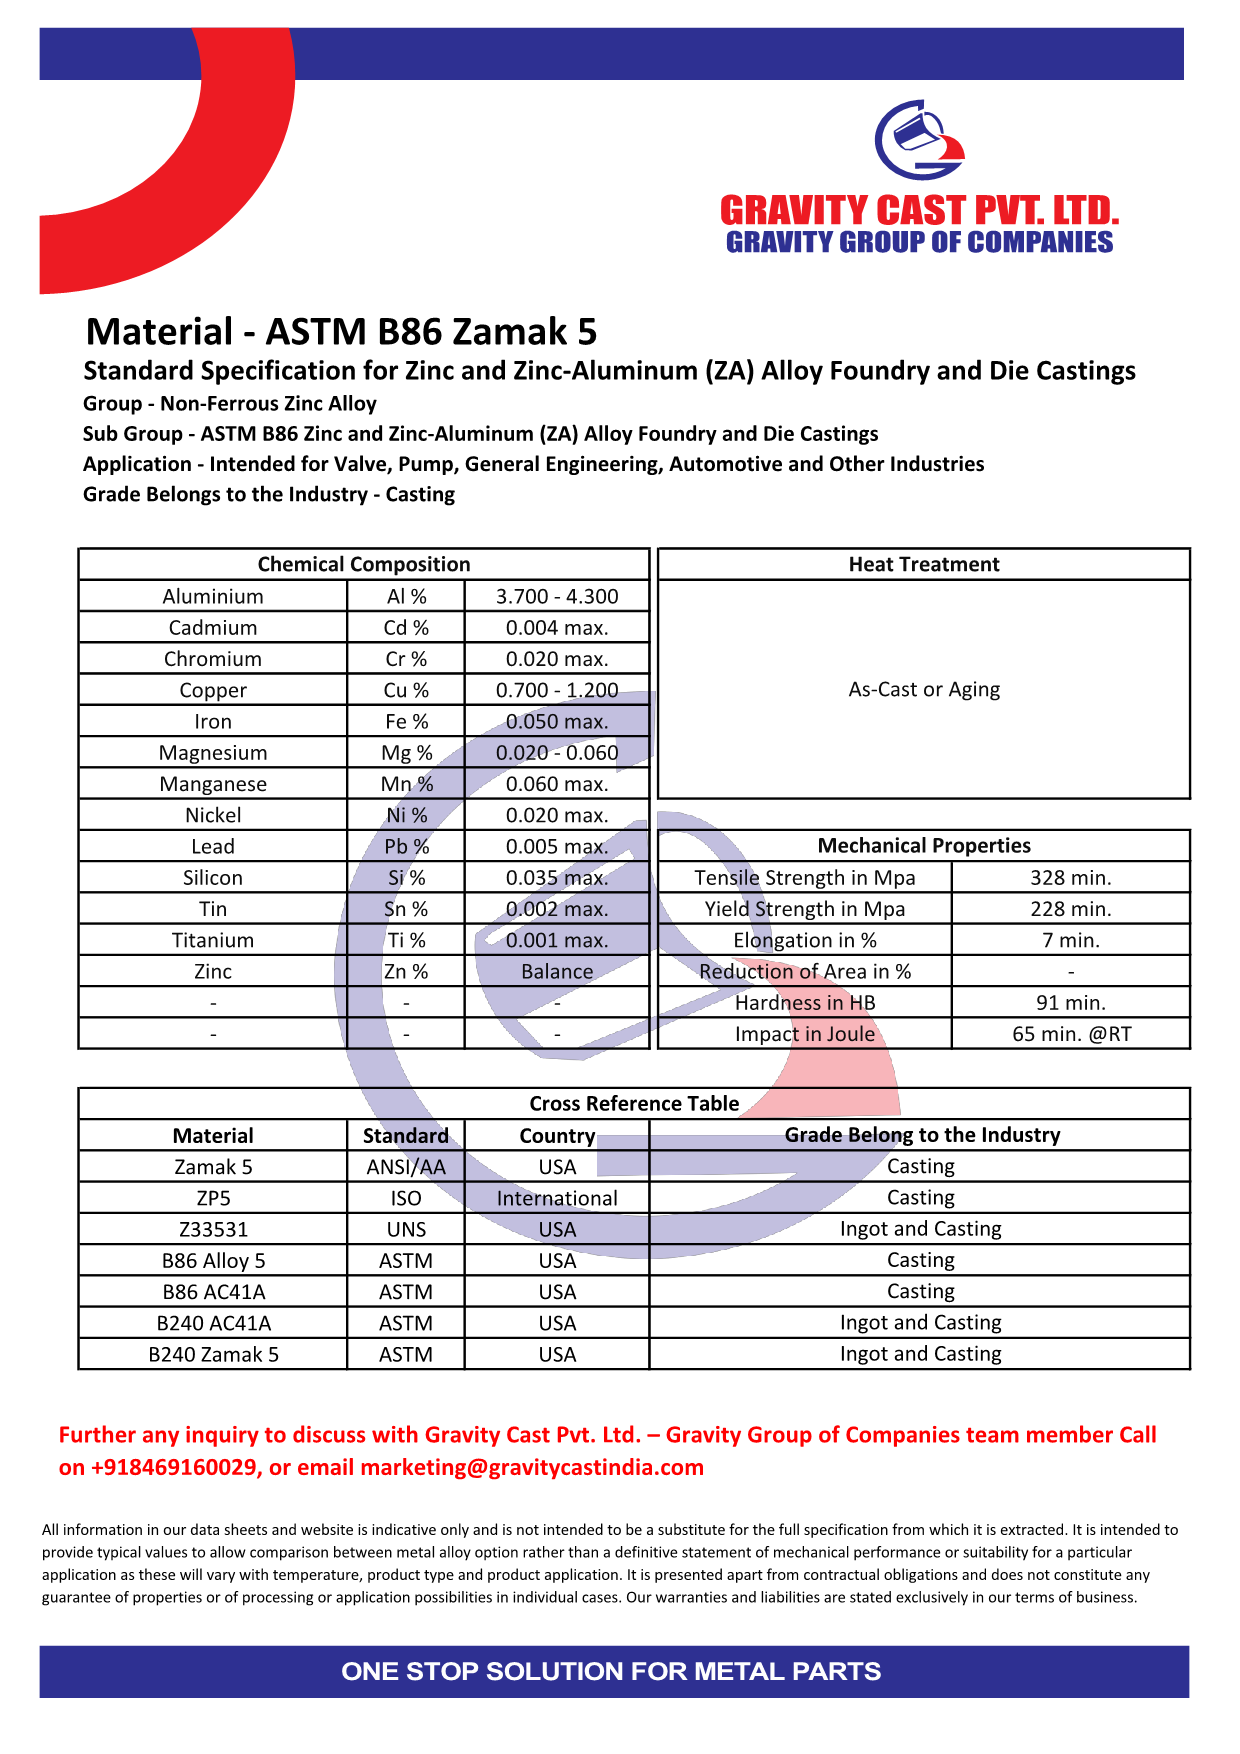 ASTM B86 Zamak 5.pdf